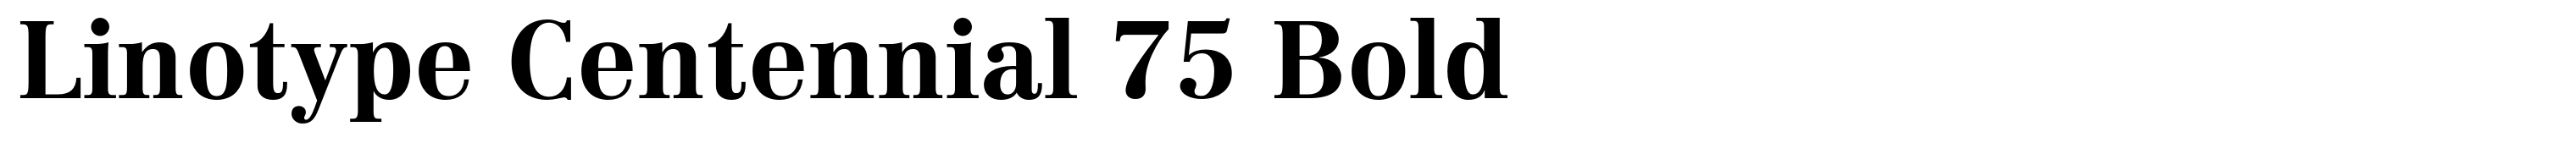 Linotype Centennial 75 Bold